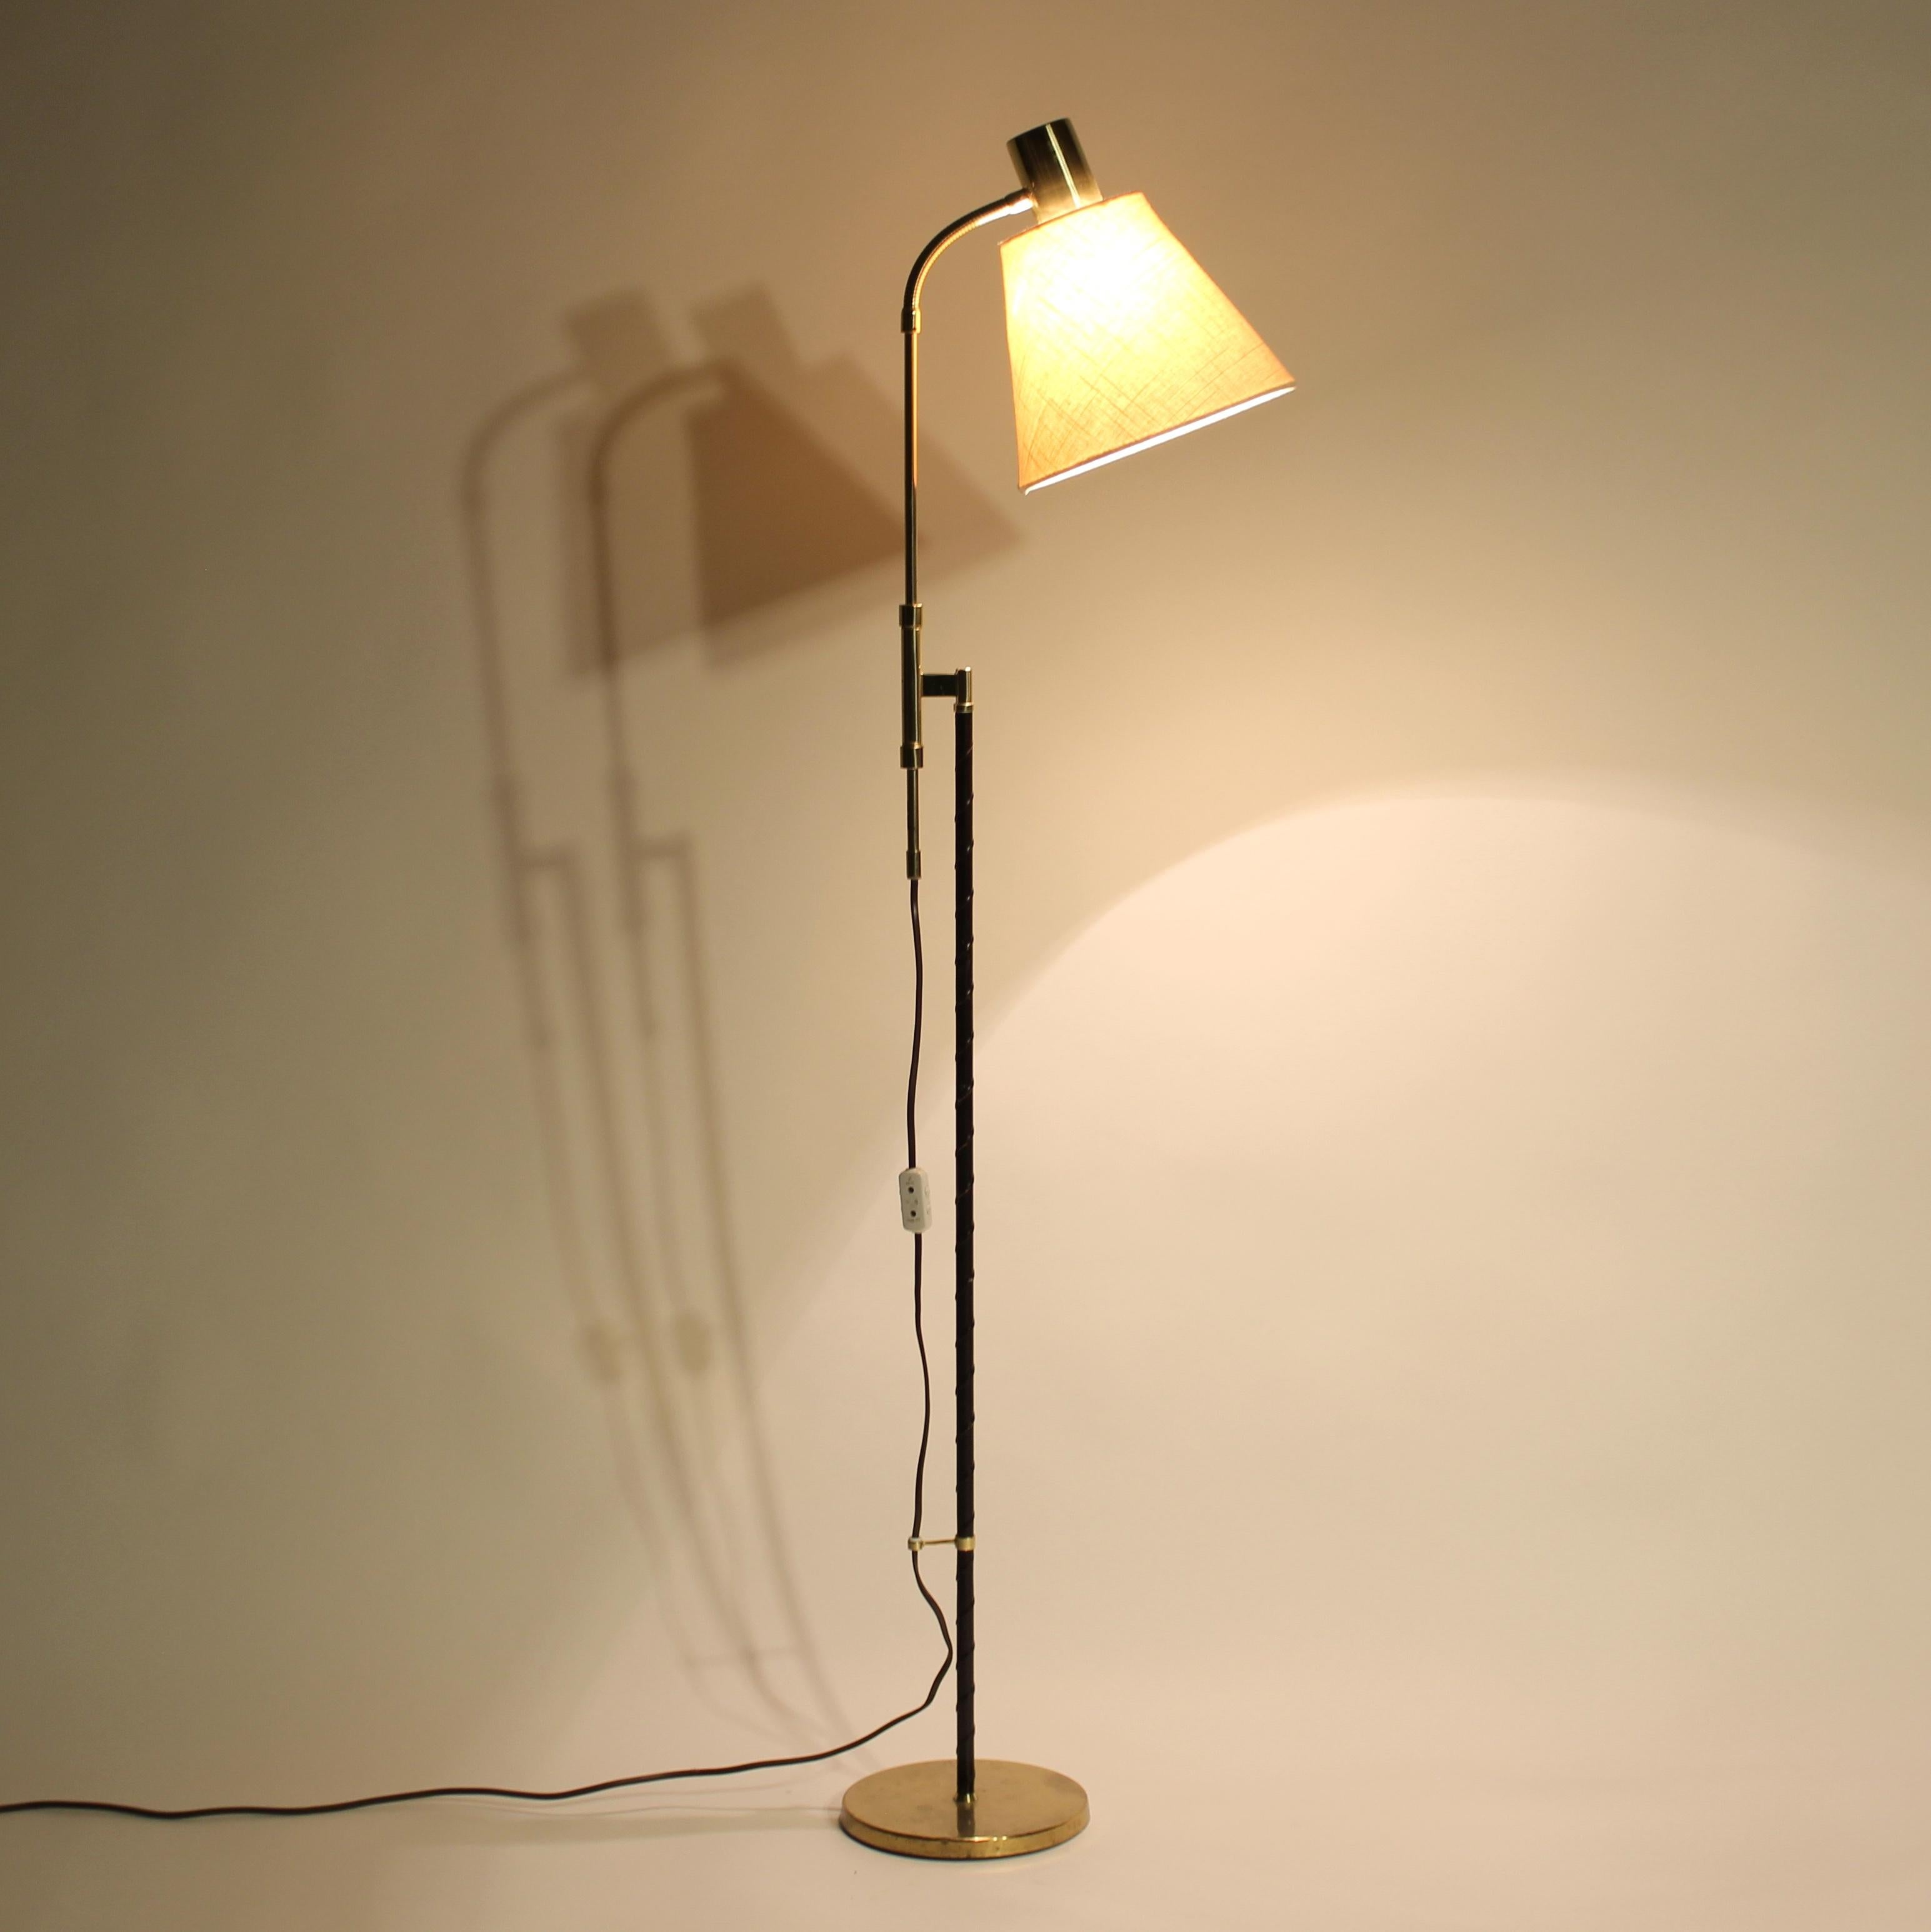 Swedish height adjustable floor lamp by MAE (Möller Armatur Eskilstuna), 1960s For Sale 1